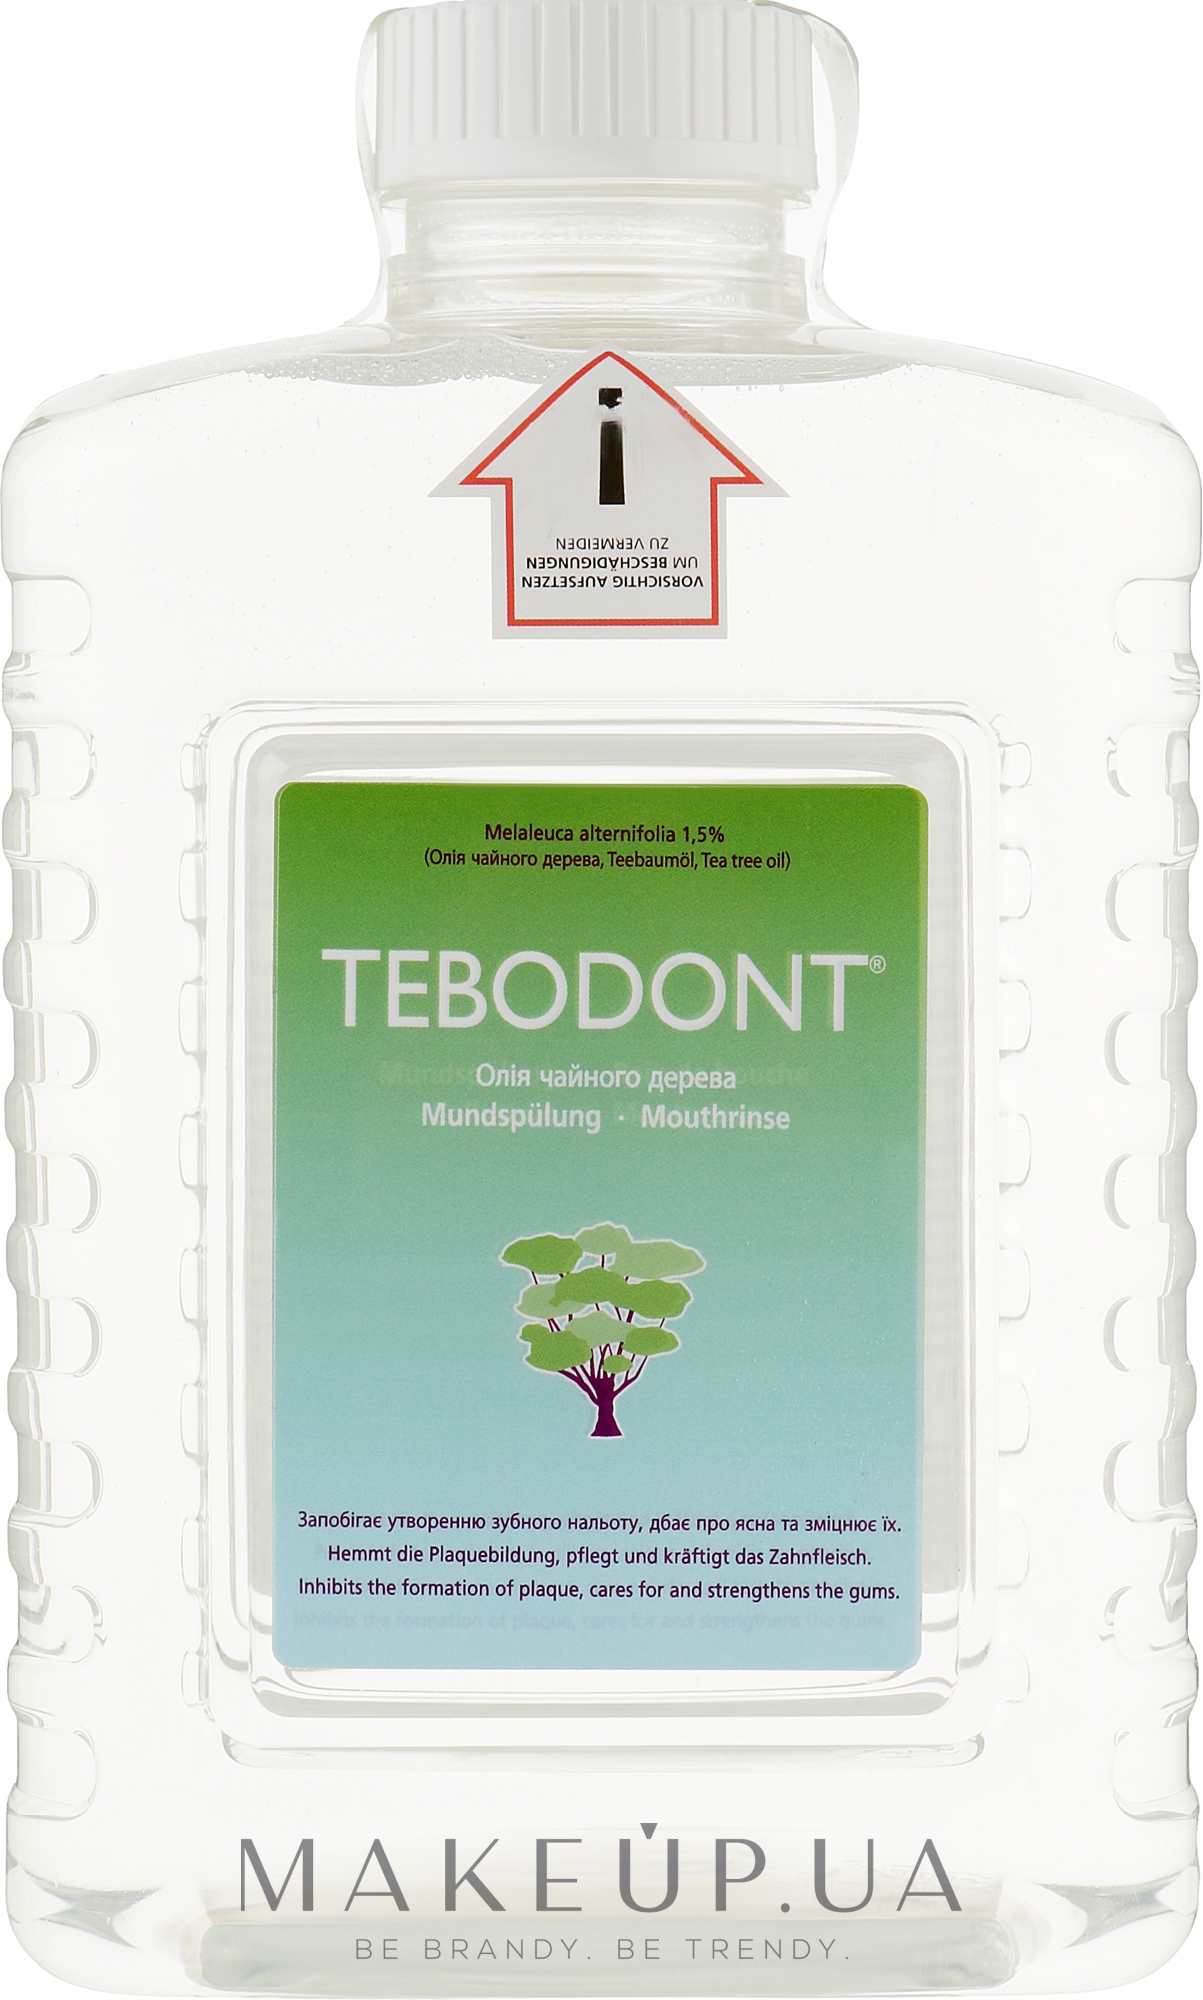 Ополіскувач порожнини рота з маслом чайного дерева для диспенсера - Dr. Wild Tebodont (Melaleuca Alternifolia) — фото 1500ml